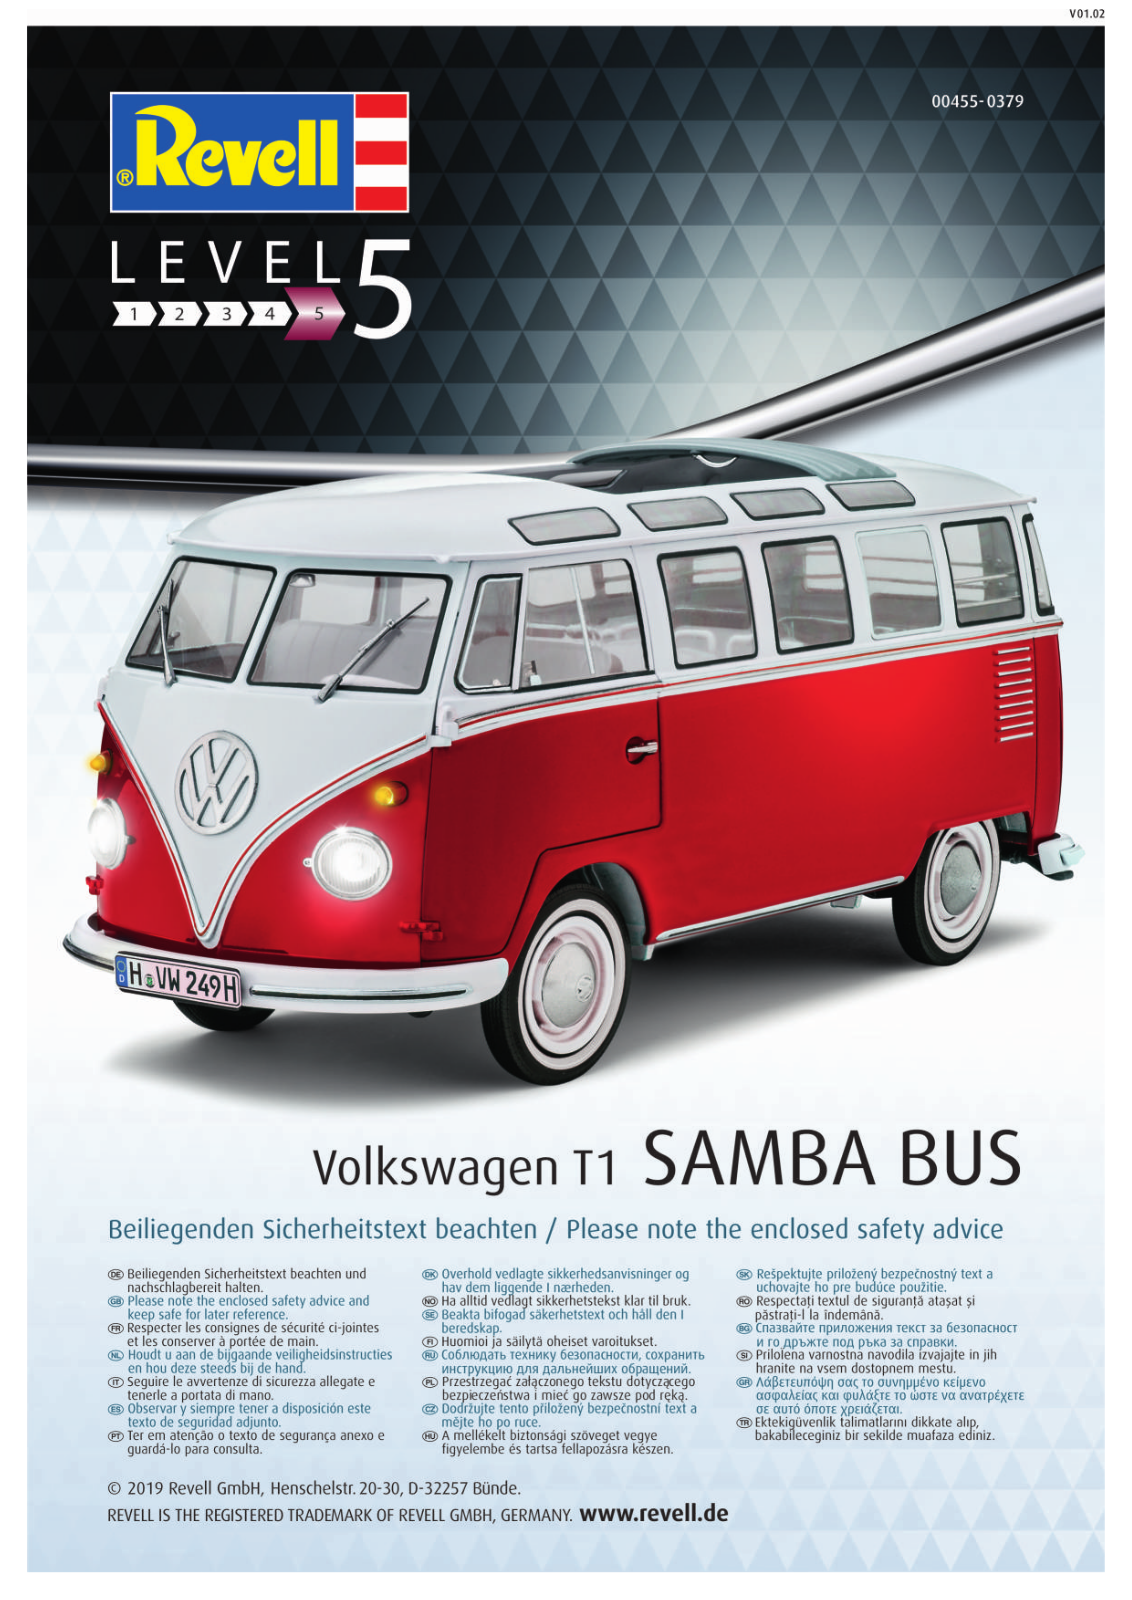 Revell Technik Volkswagen T1 Samba Bus Service Manual